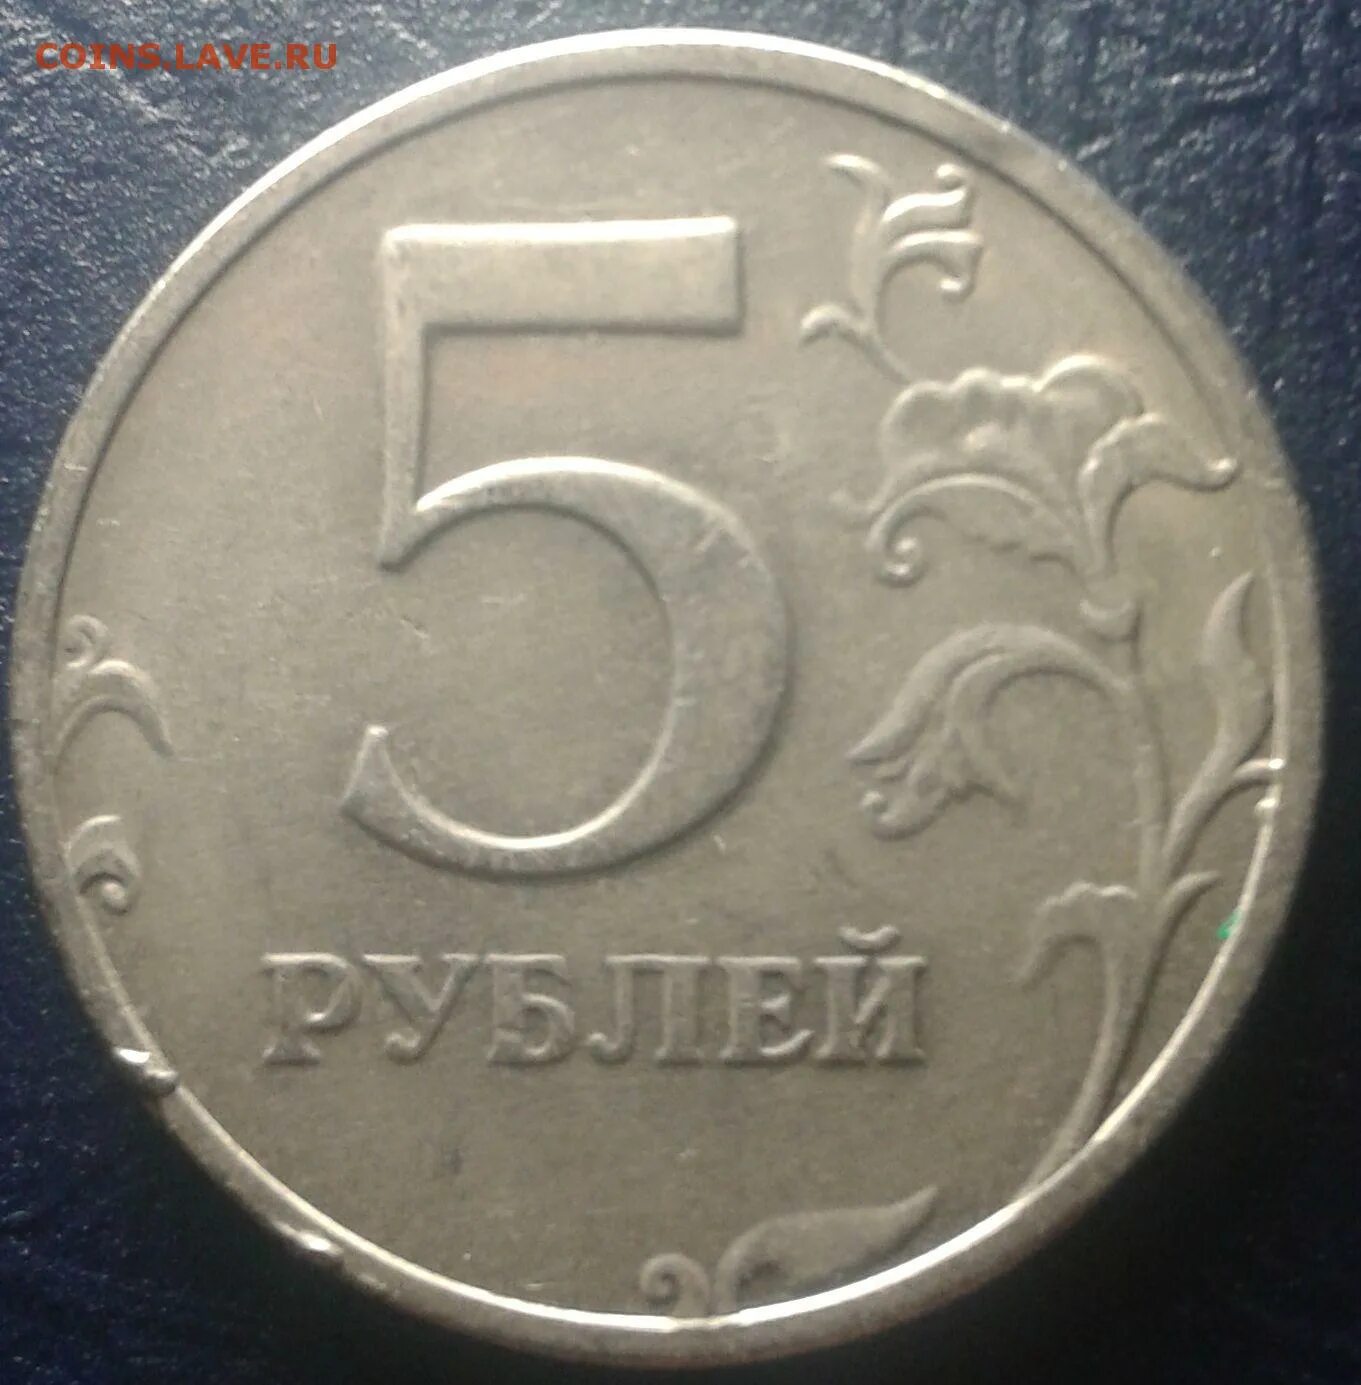 5 рублей 98. 2009г5р. 5 Рублей 98 ММД. 5 Рублей 1998 года брак. Засорение штемпеля на монетах.